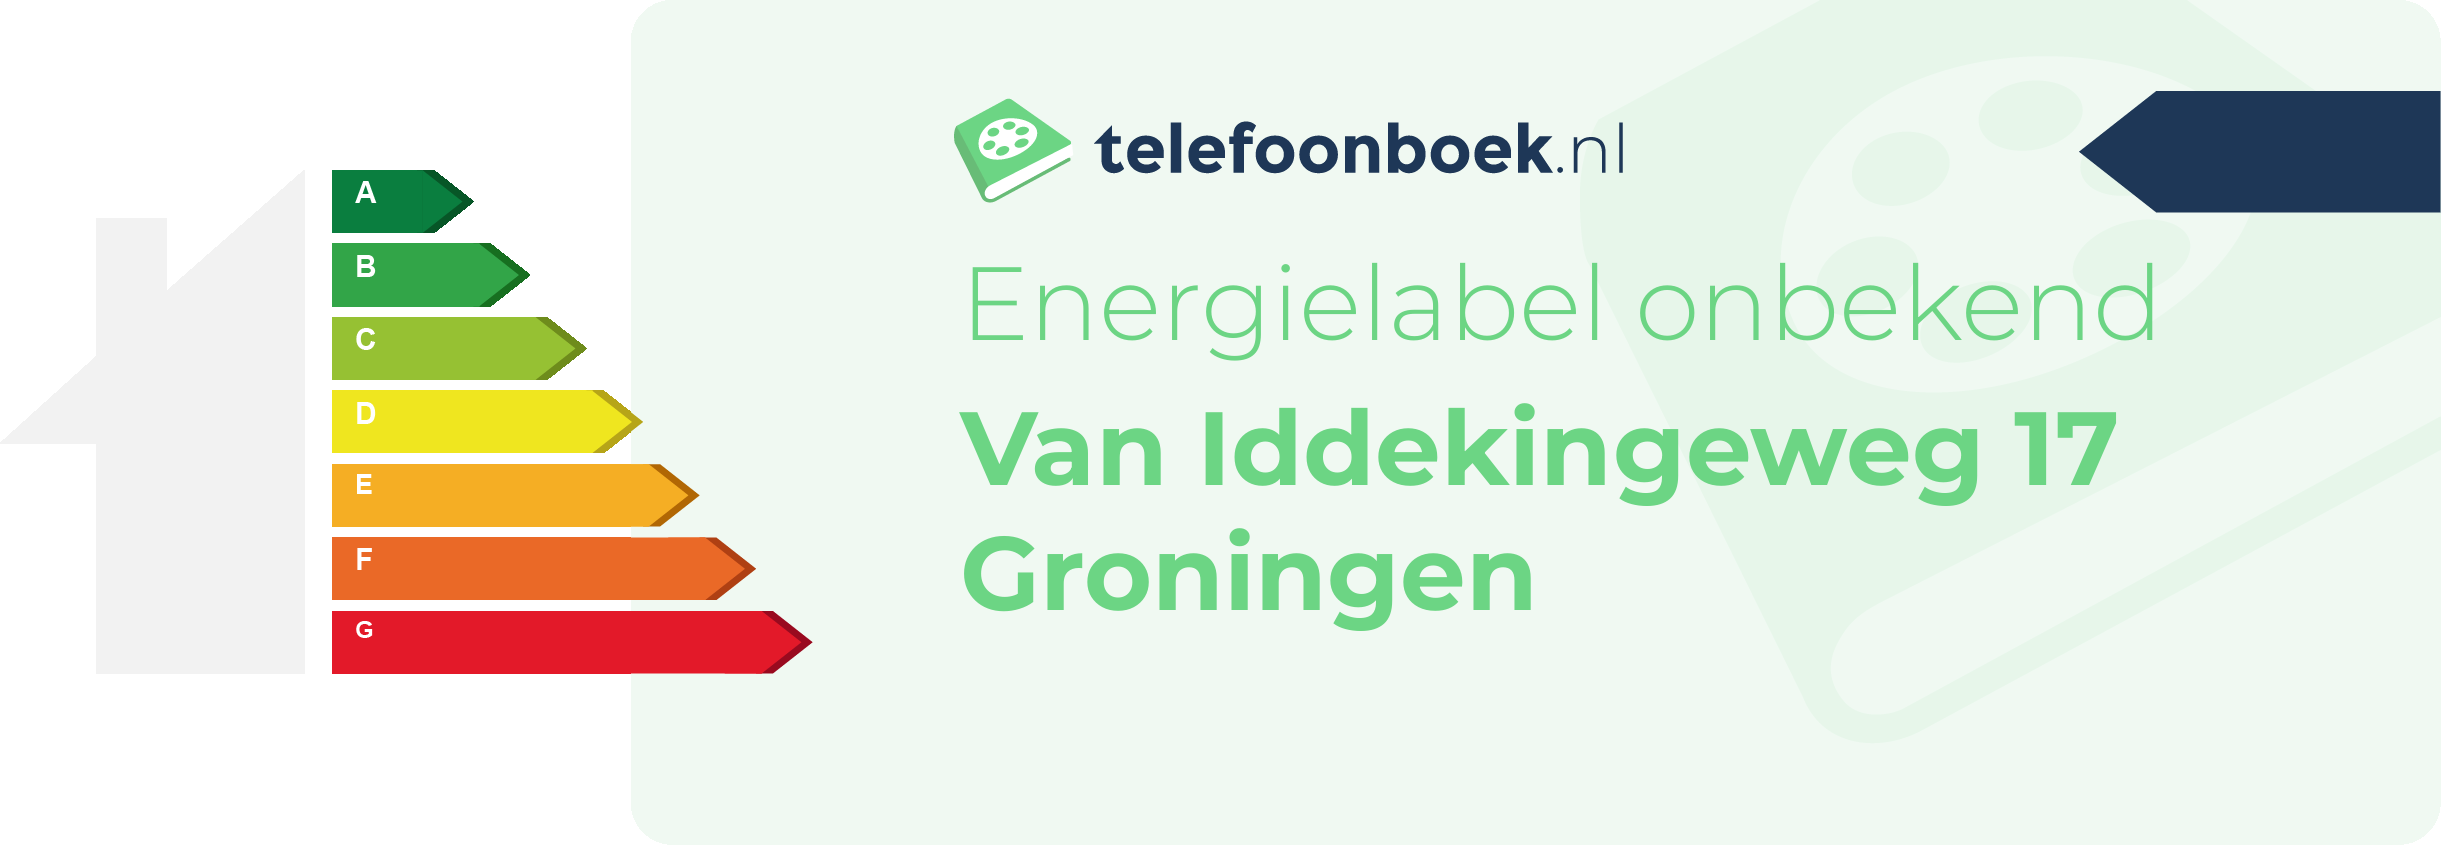 Energielabel Van Iddekingeweg 17 Groningen